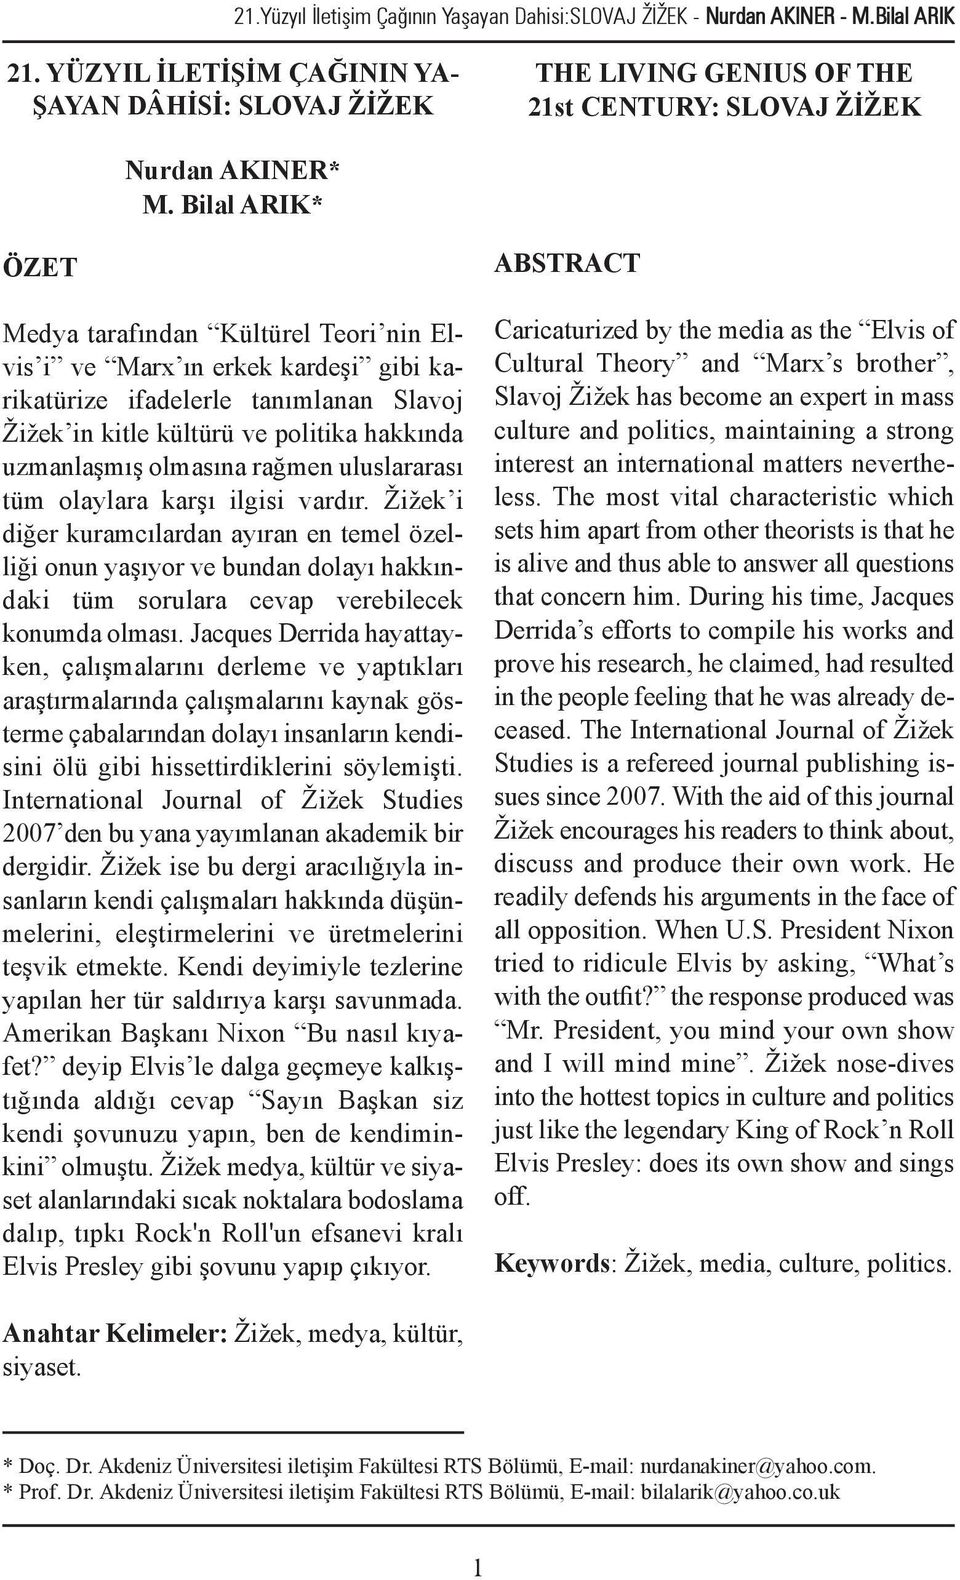 Bilal ARIK* ÖZET Medya tarafından Kültürel Teori nin Elvis i ve Marx ın erkek kardeşi gibi karikatürize ifadelerle tanımlanan Slavoj Žižek in kitle kültürü ve politika hakkında uzmanlaşmış olmasına